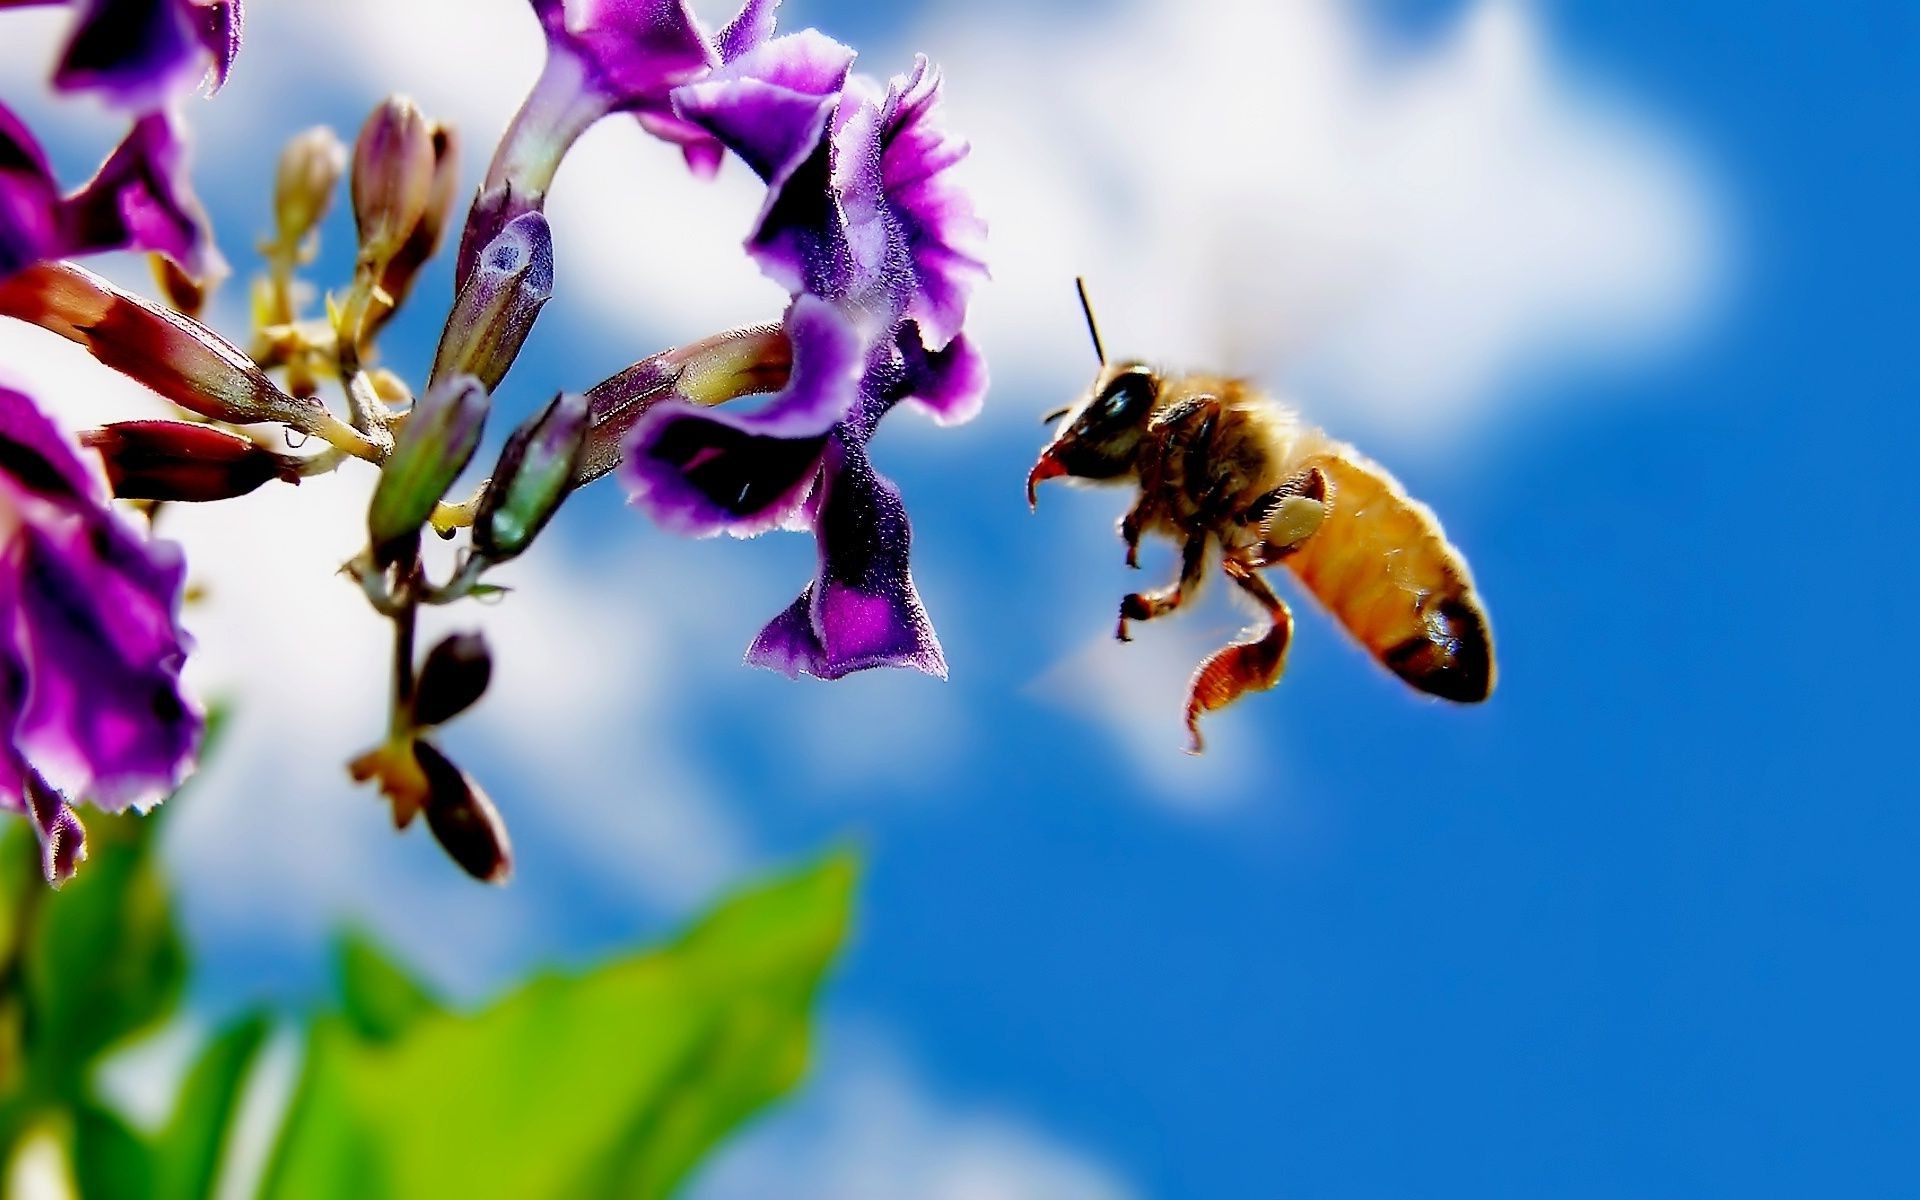 животные пчелка природа насекомое цветок мед пыльца на открытом воздухе опыление лето флора оса пчелки шмель лист размытость сад дикий нектар хорошую погоду